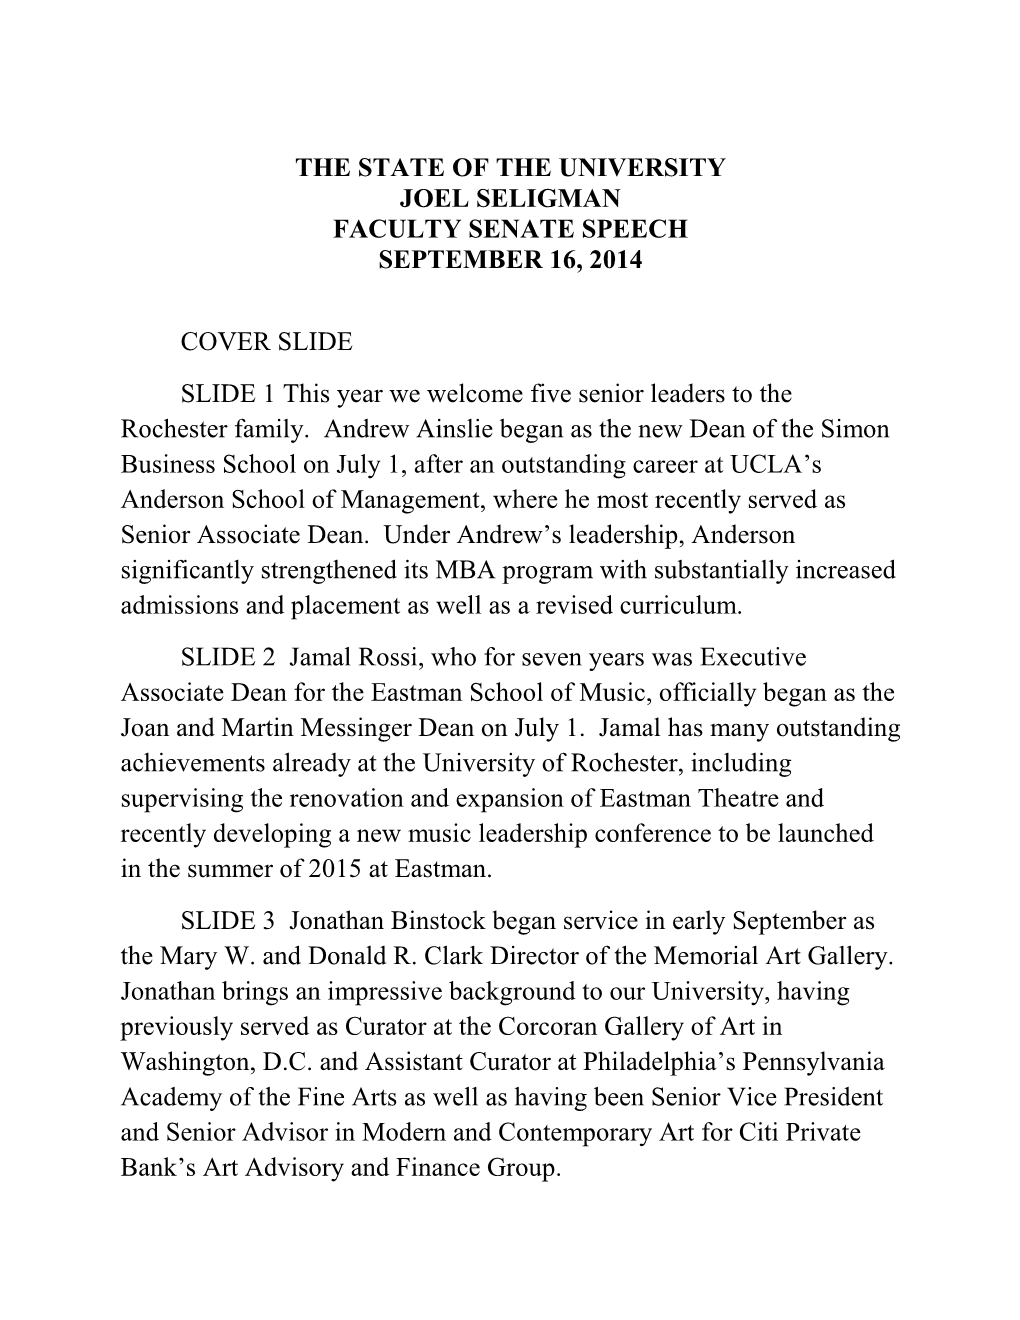 The State of the University Joel Seligman Faculty Senate Speech September 16, 2014